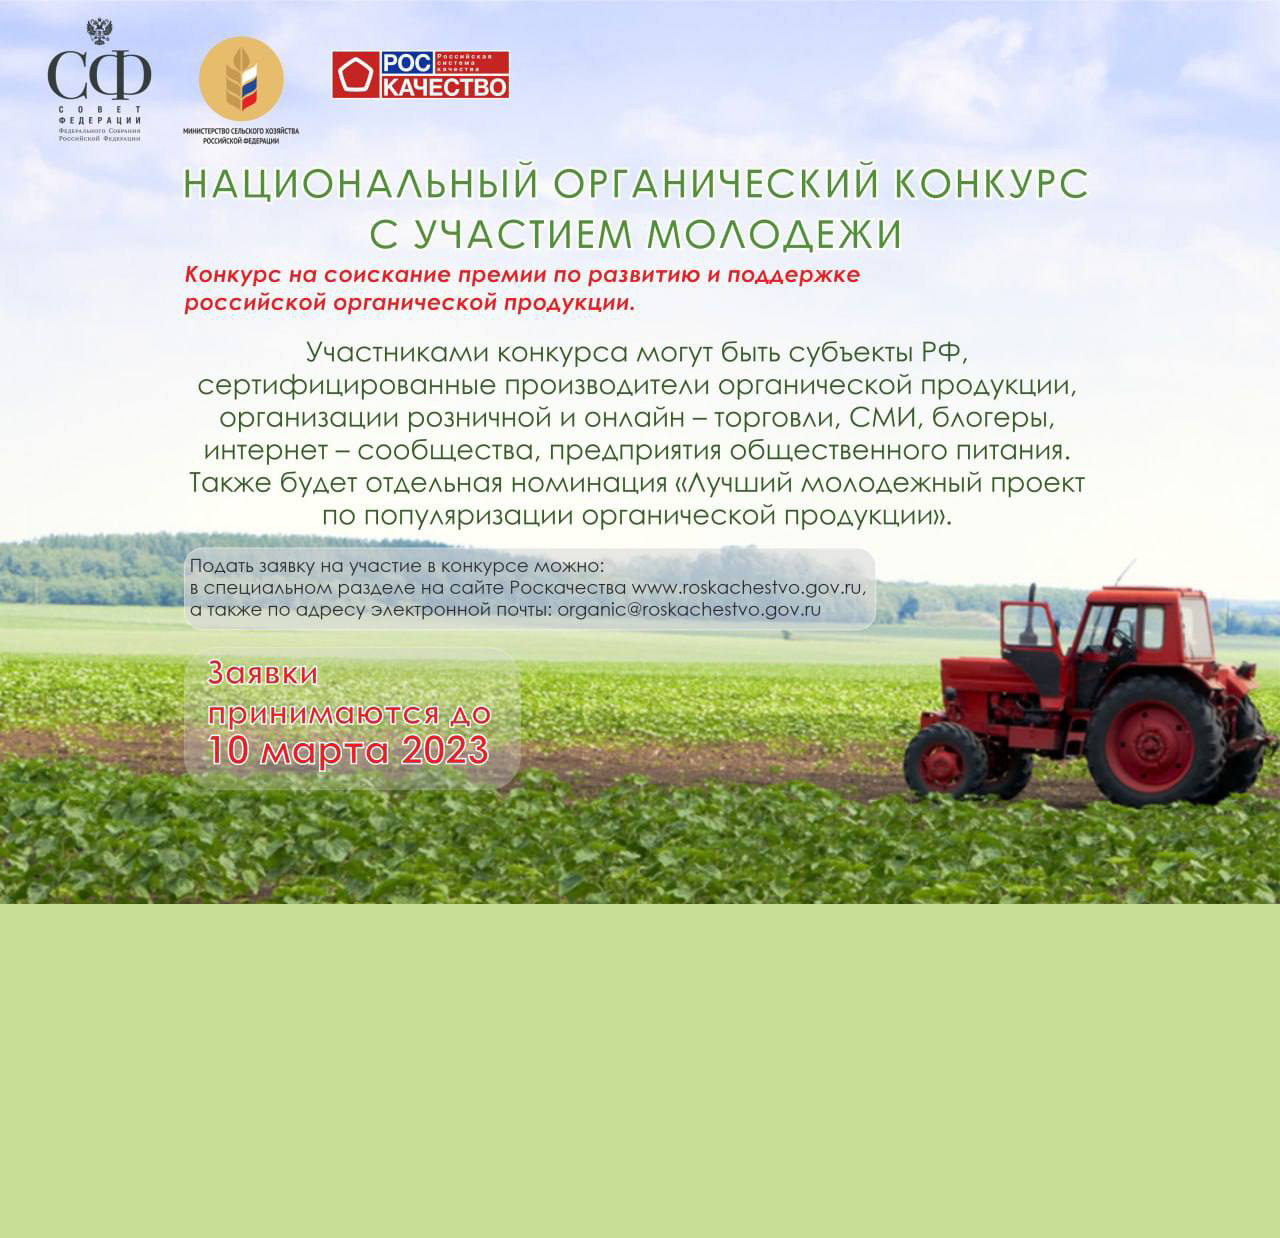 Идеи молодежи по развитию российской органической продукции получат поддержку на самом высоком уровне 